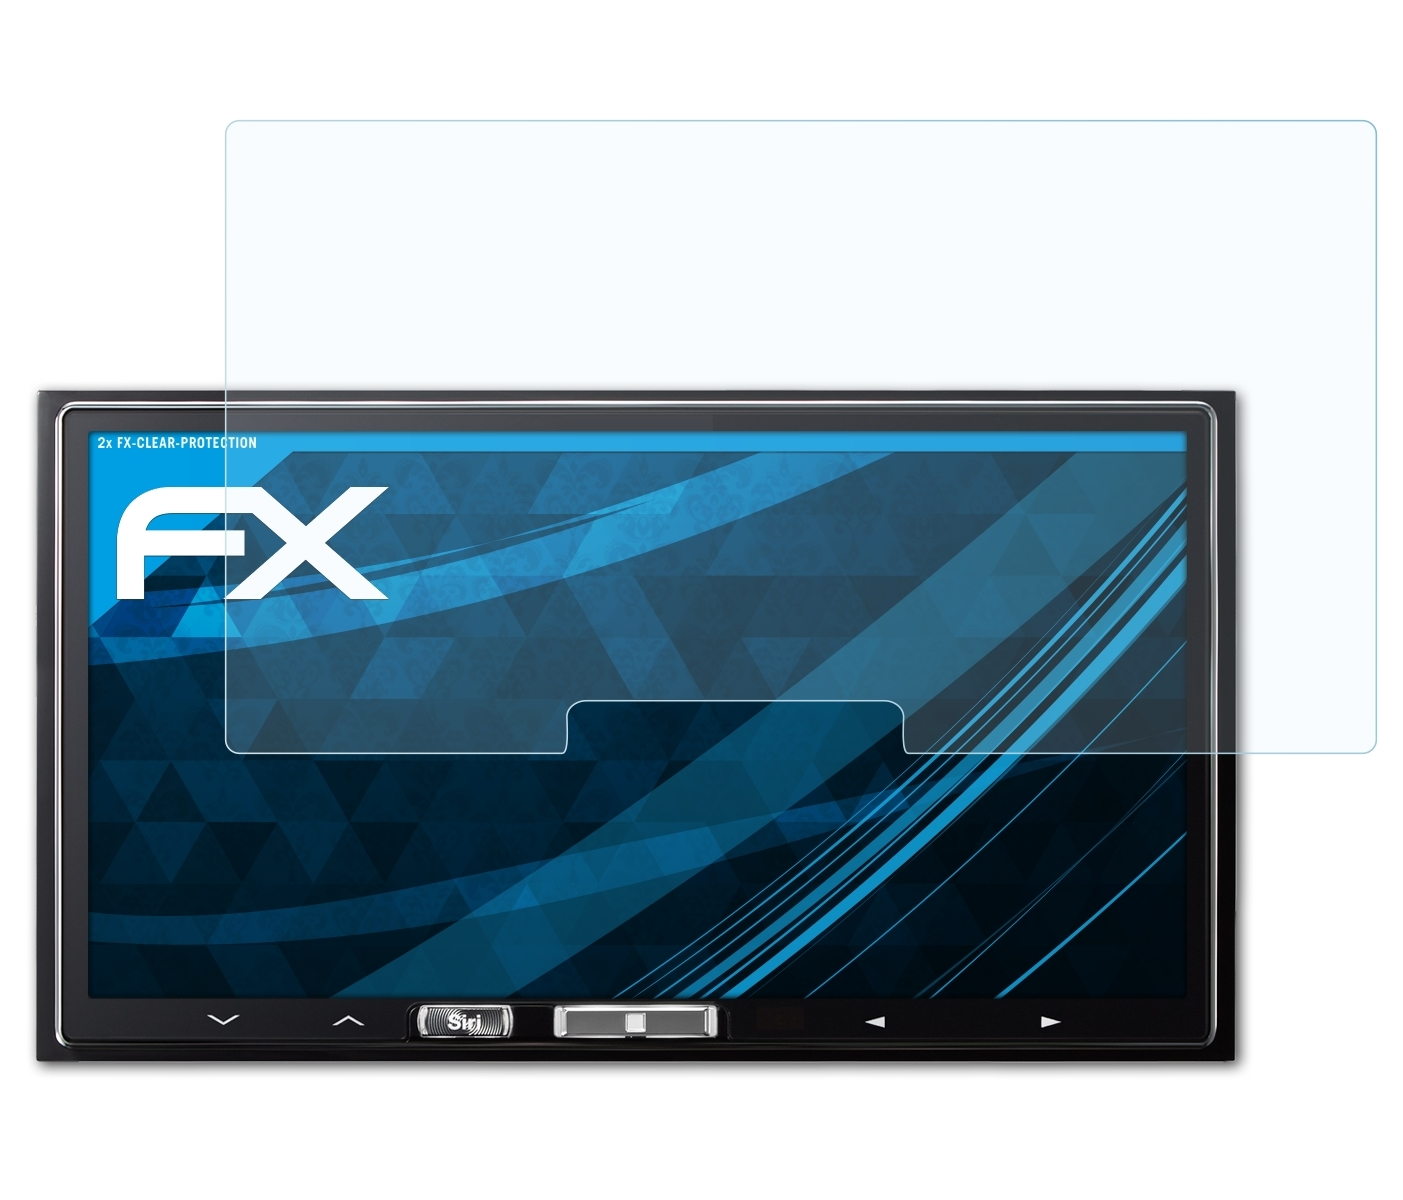 iLX-700) Displayschutz(für ATFOLIX FX-Clear Alpine 2x